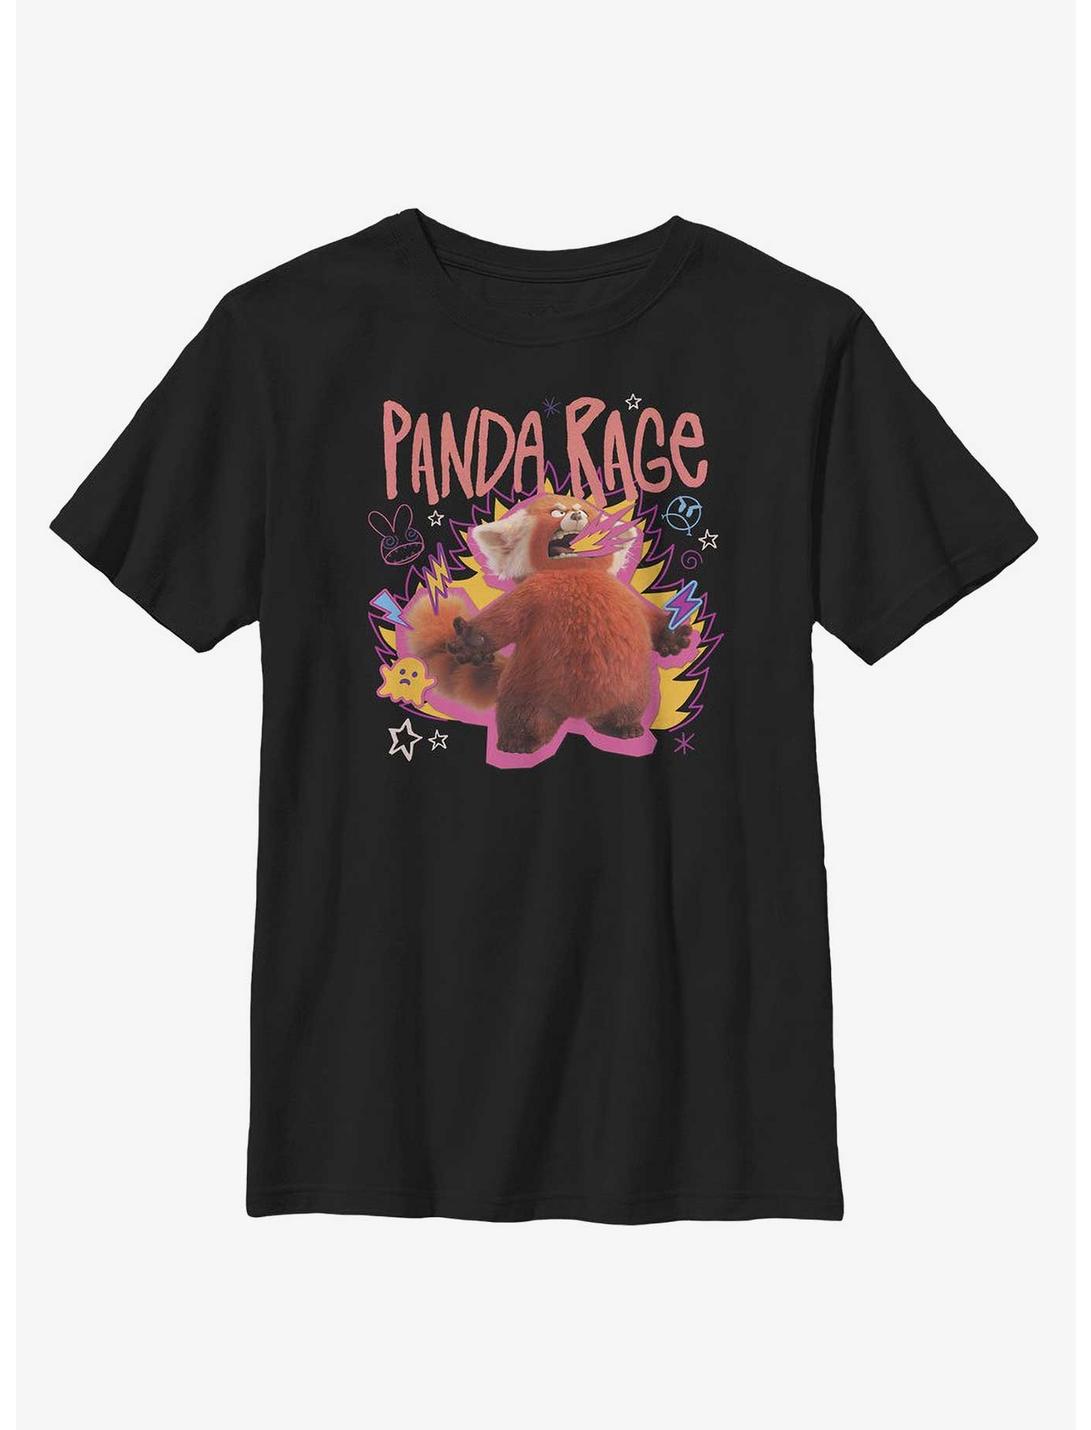 Disney Pixar Turning Red Panda Rage Portrait Youth T-Shirt, BLACK, hi-res